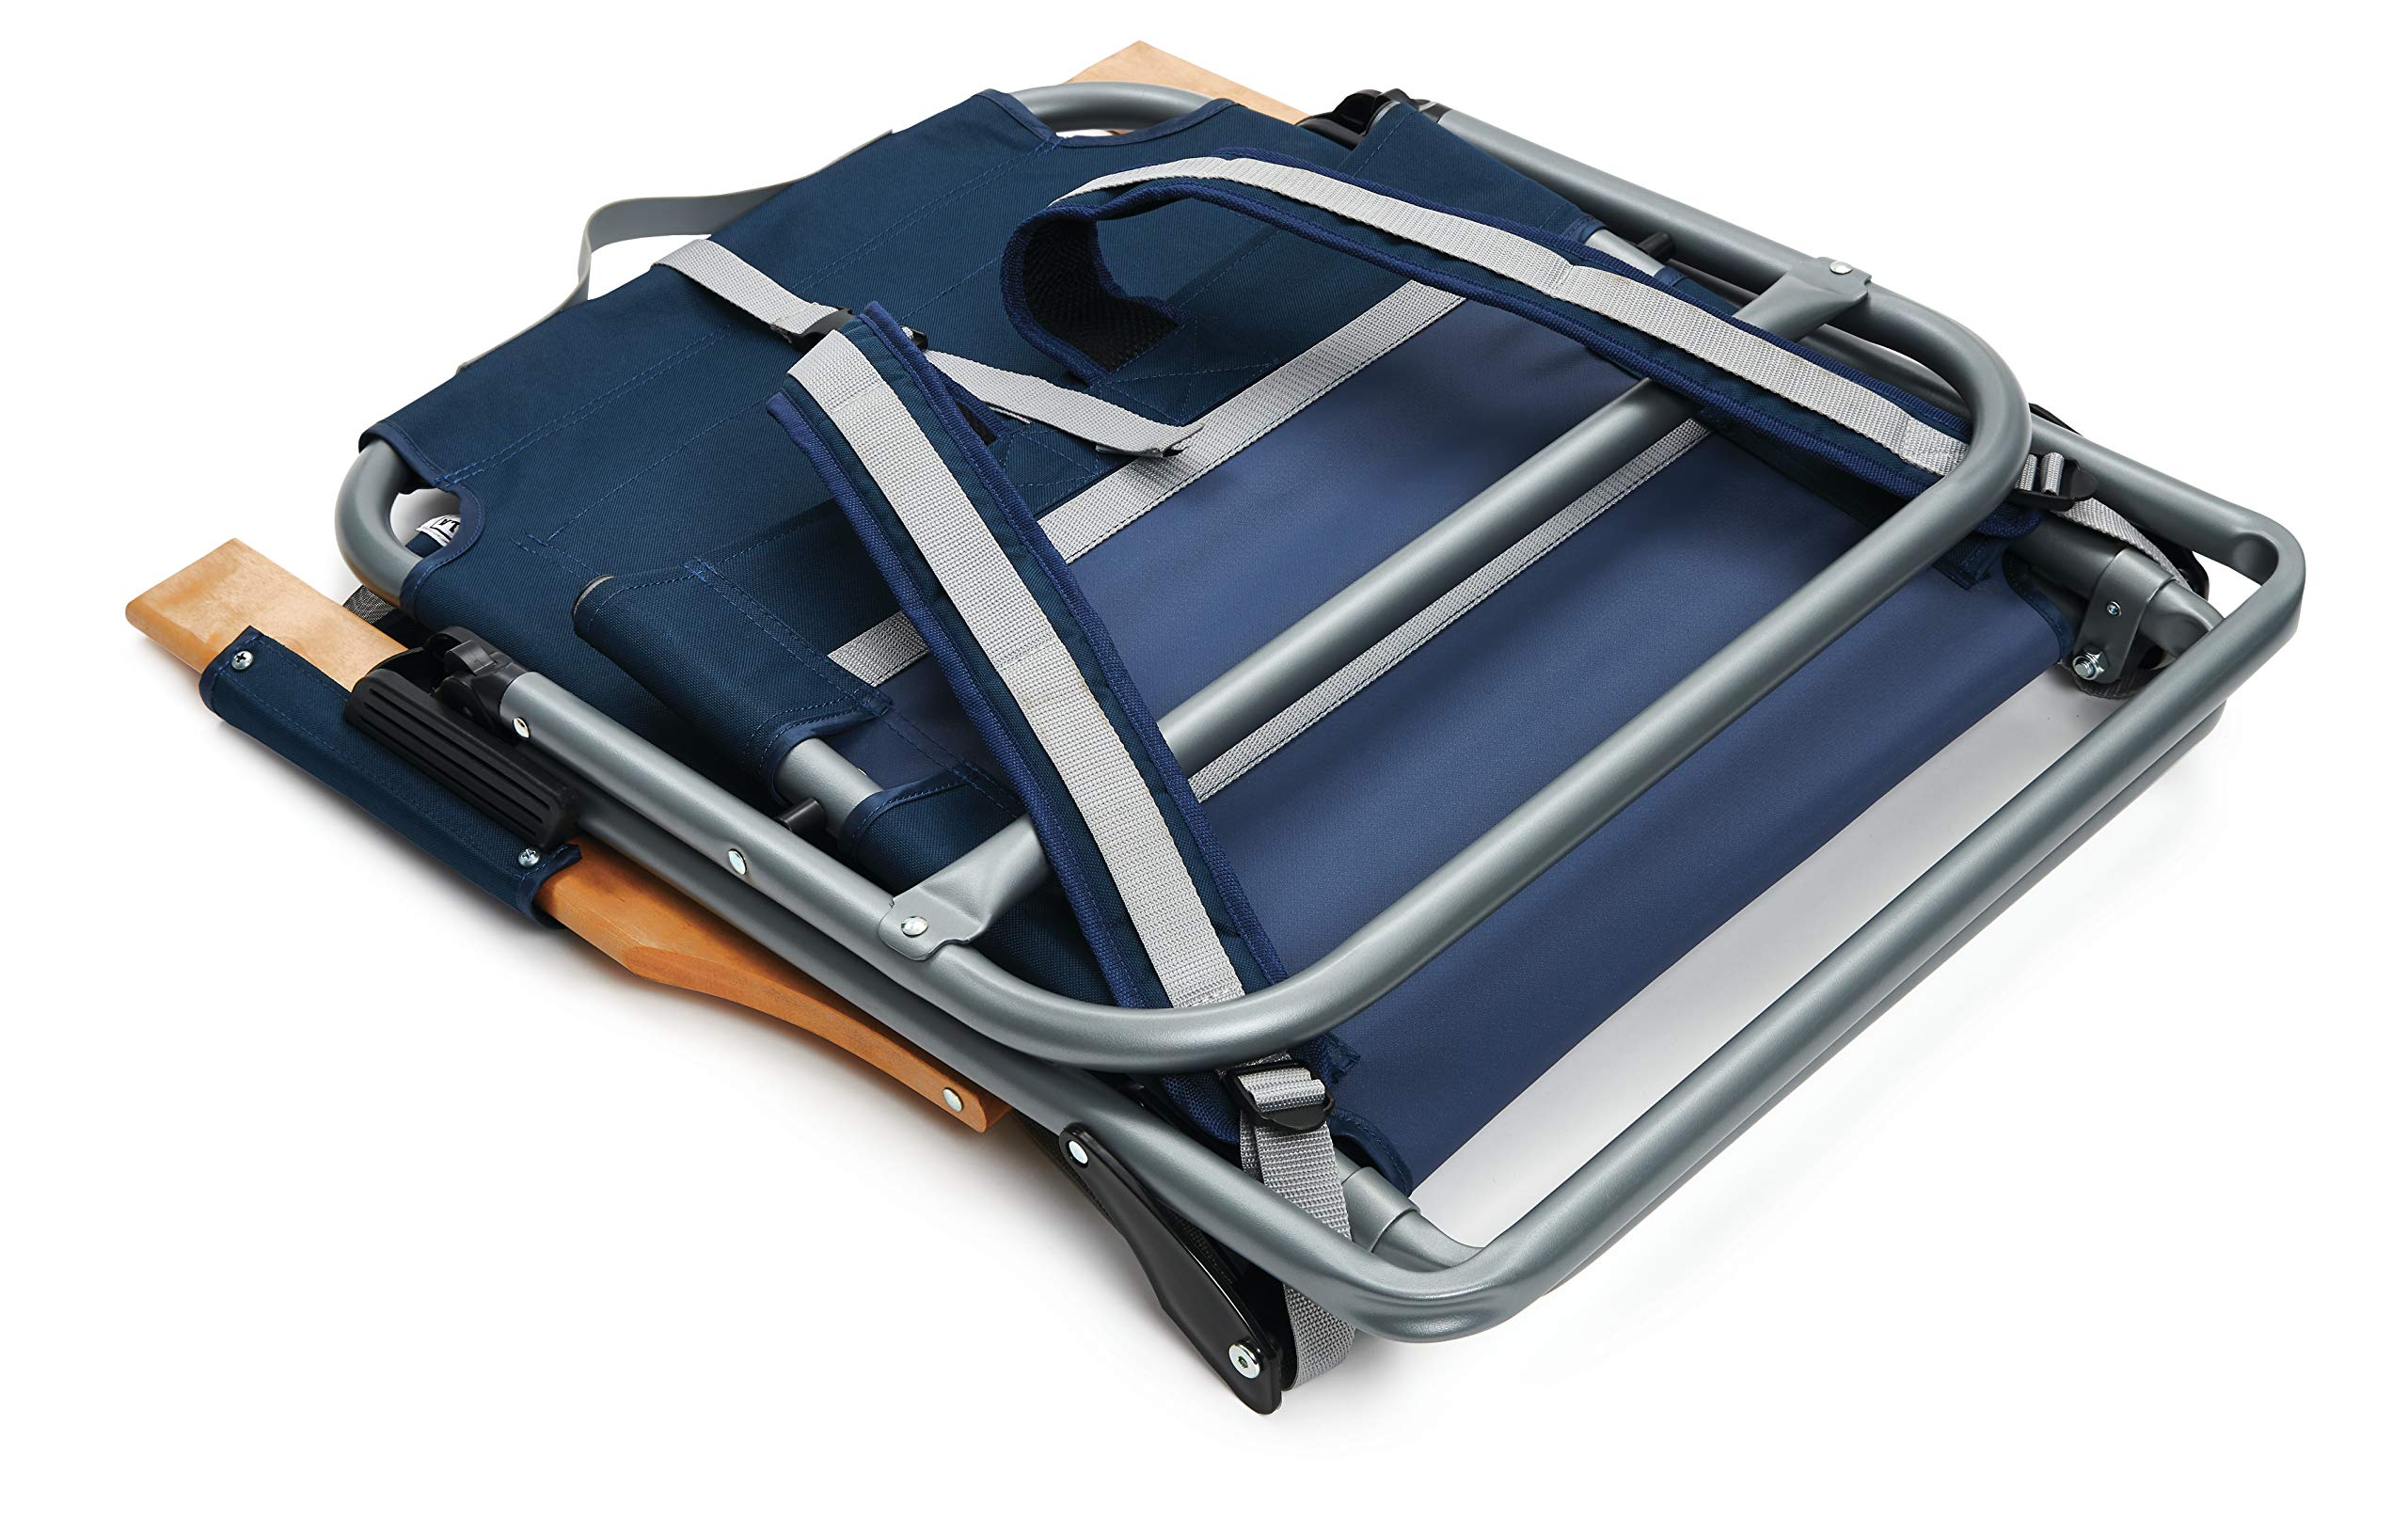 Sport-Brella SunSoul Folding Light-Weight Backpack Beach Chair